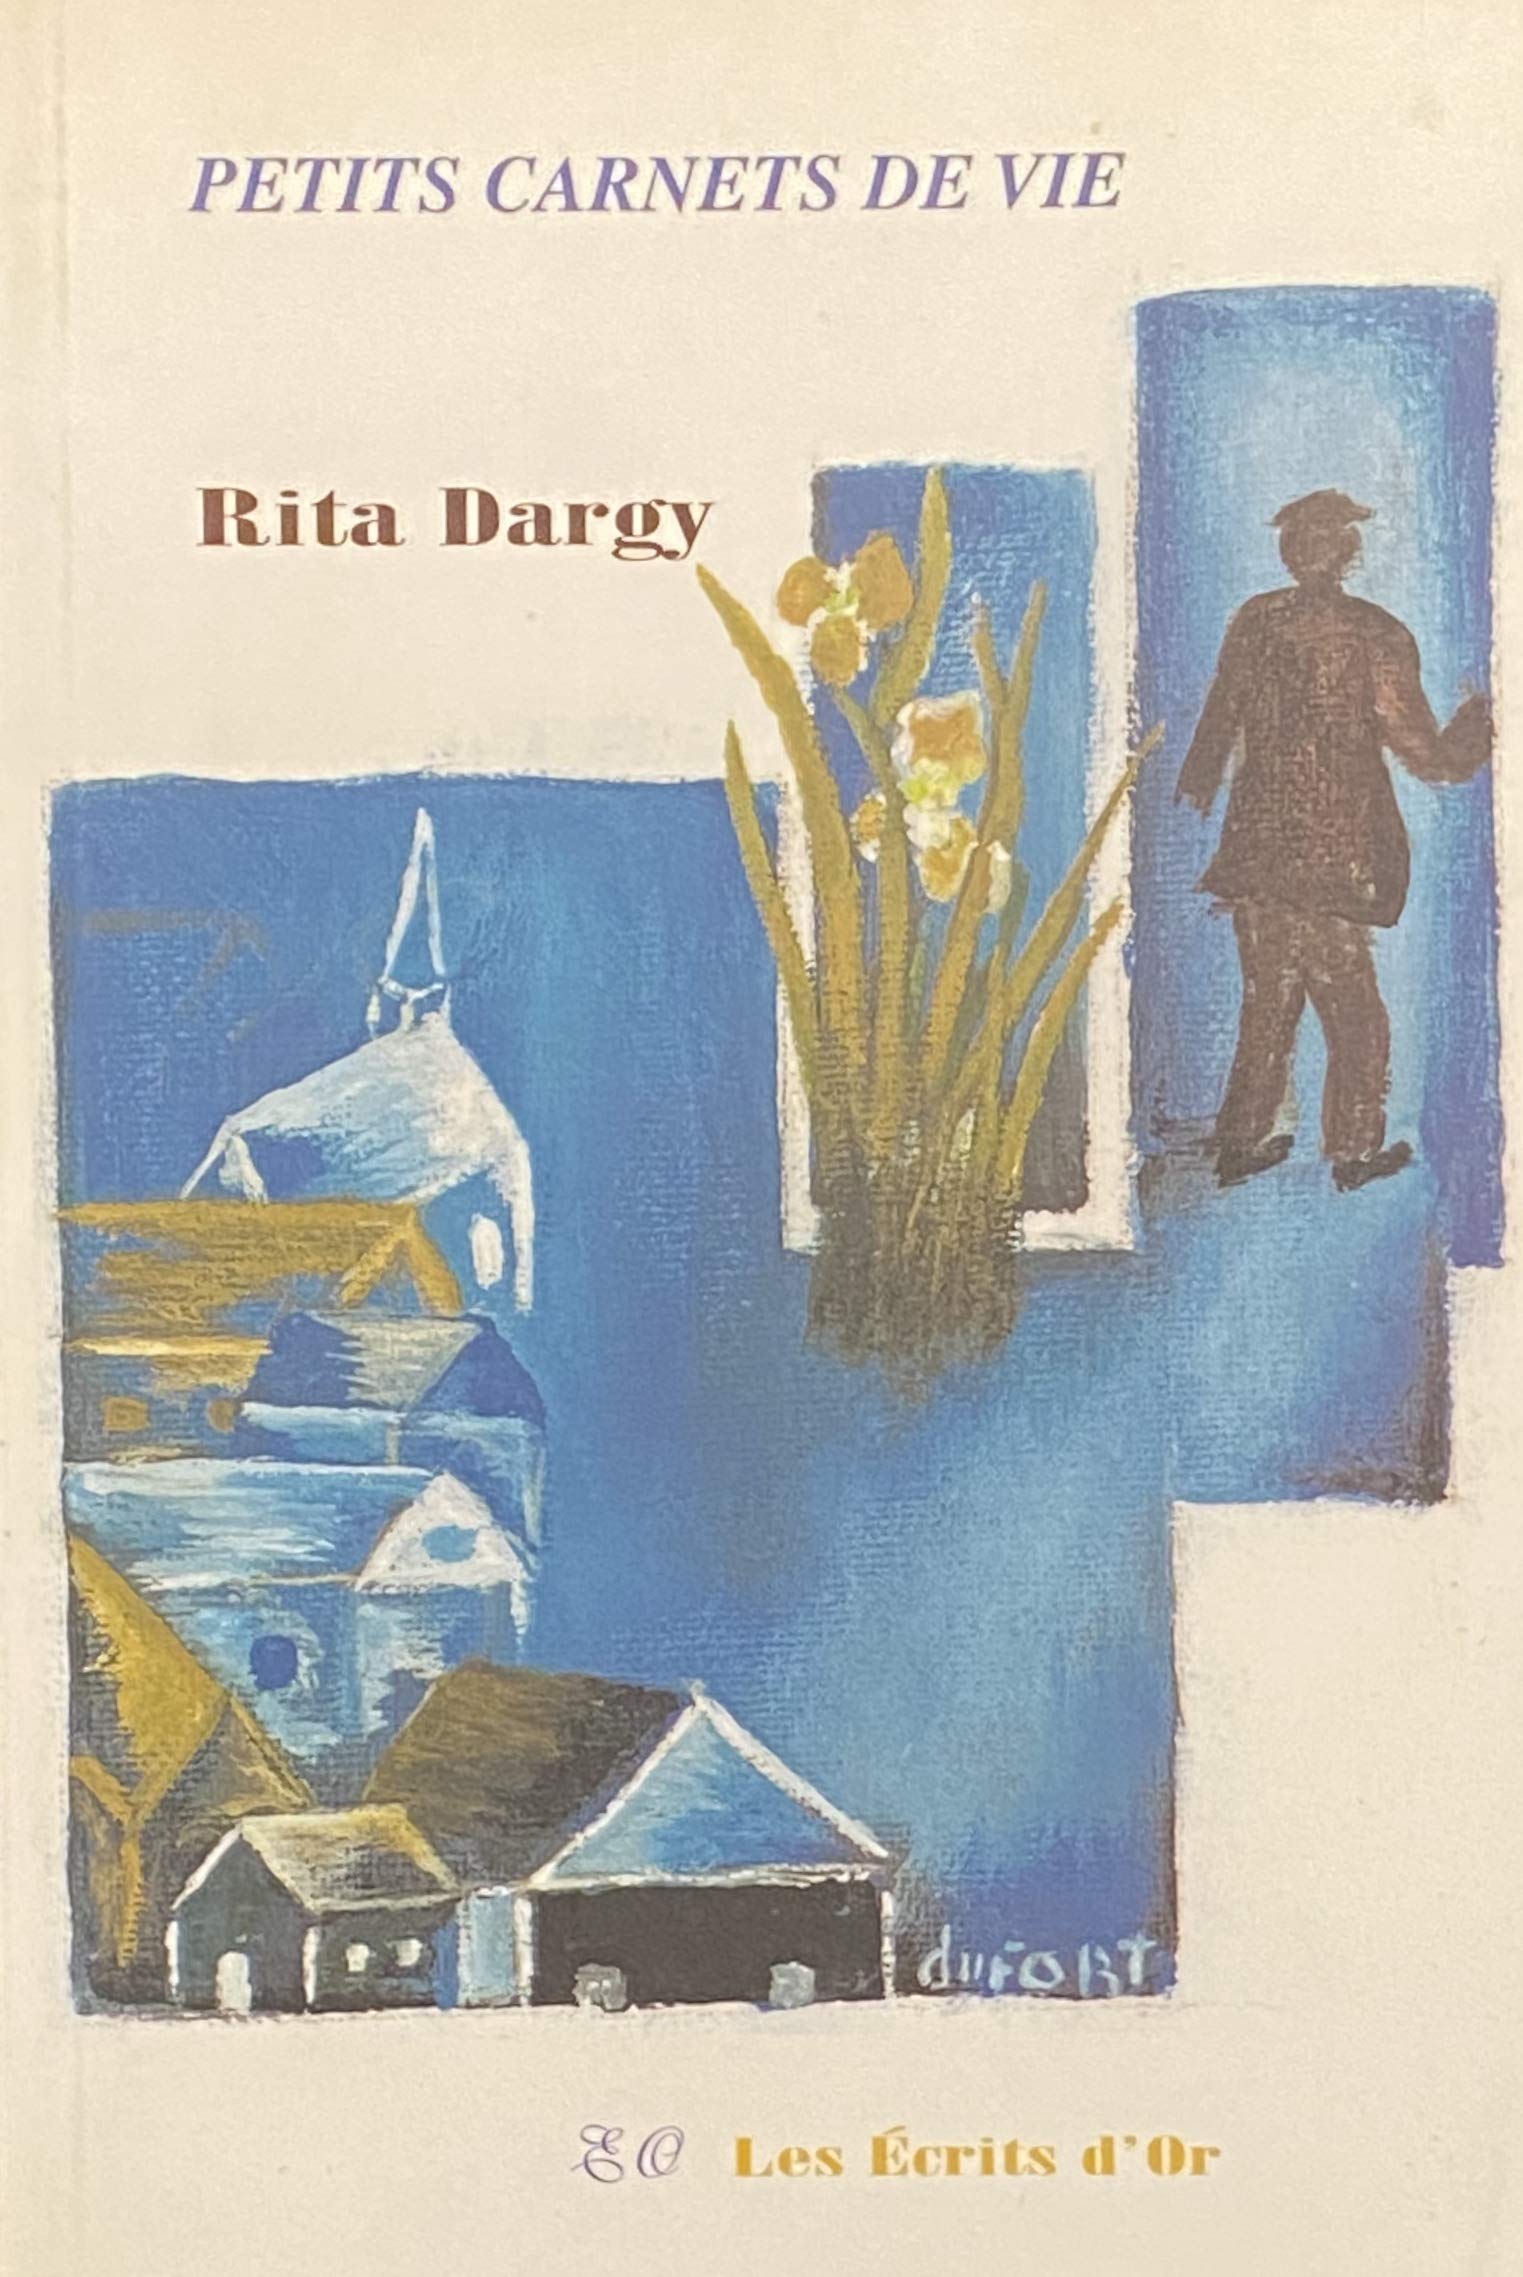 Livre ISBN 2922469042 Petits carnets de vie (Rita Dargy)